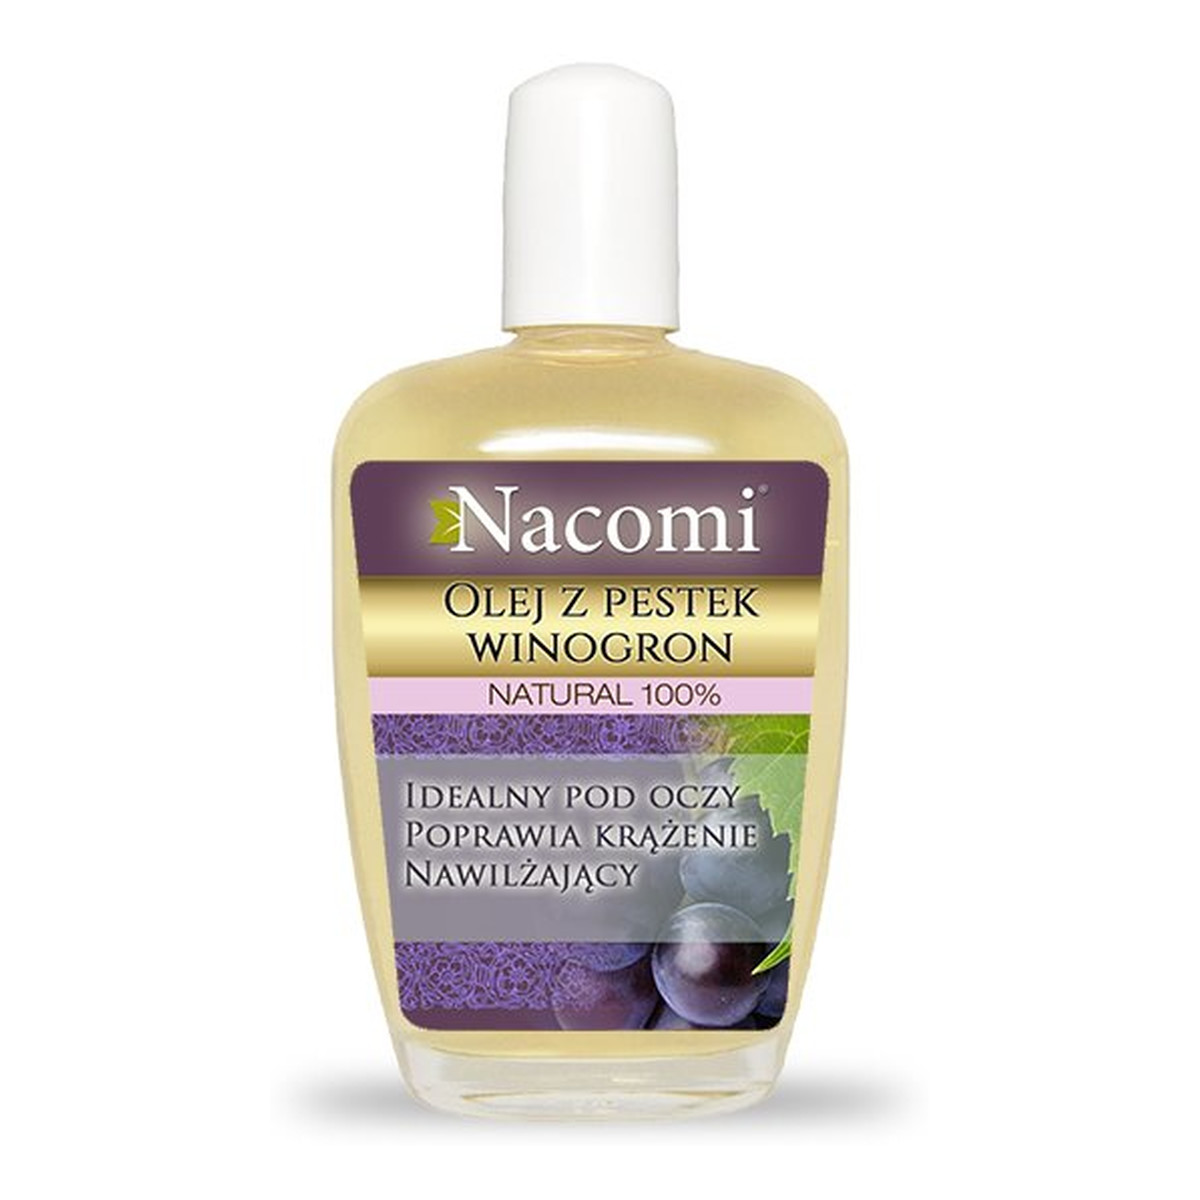 Nacomi Rafinowany Natural 100% Olej z Pestek Winogron Idealny pod oczy Poprawia krążenie Nawilża 50ml